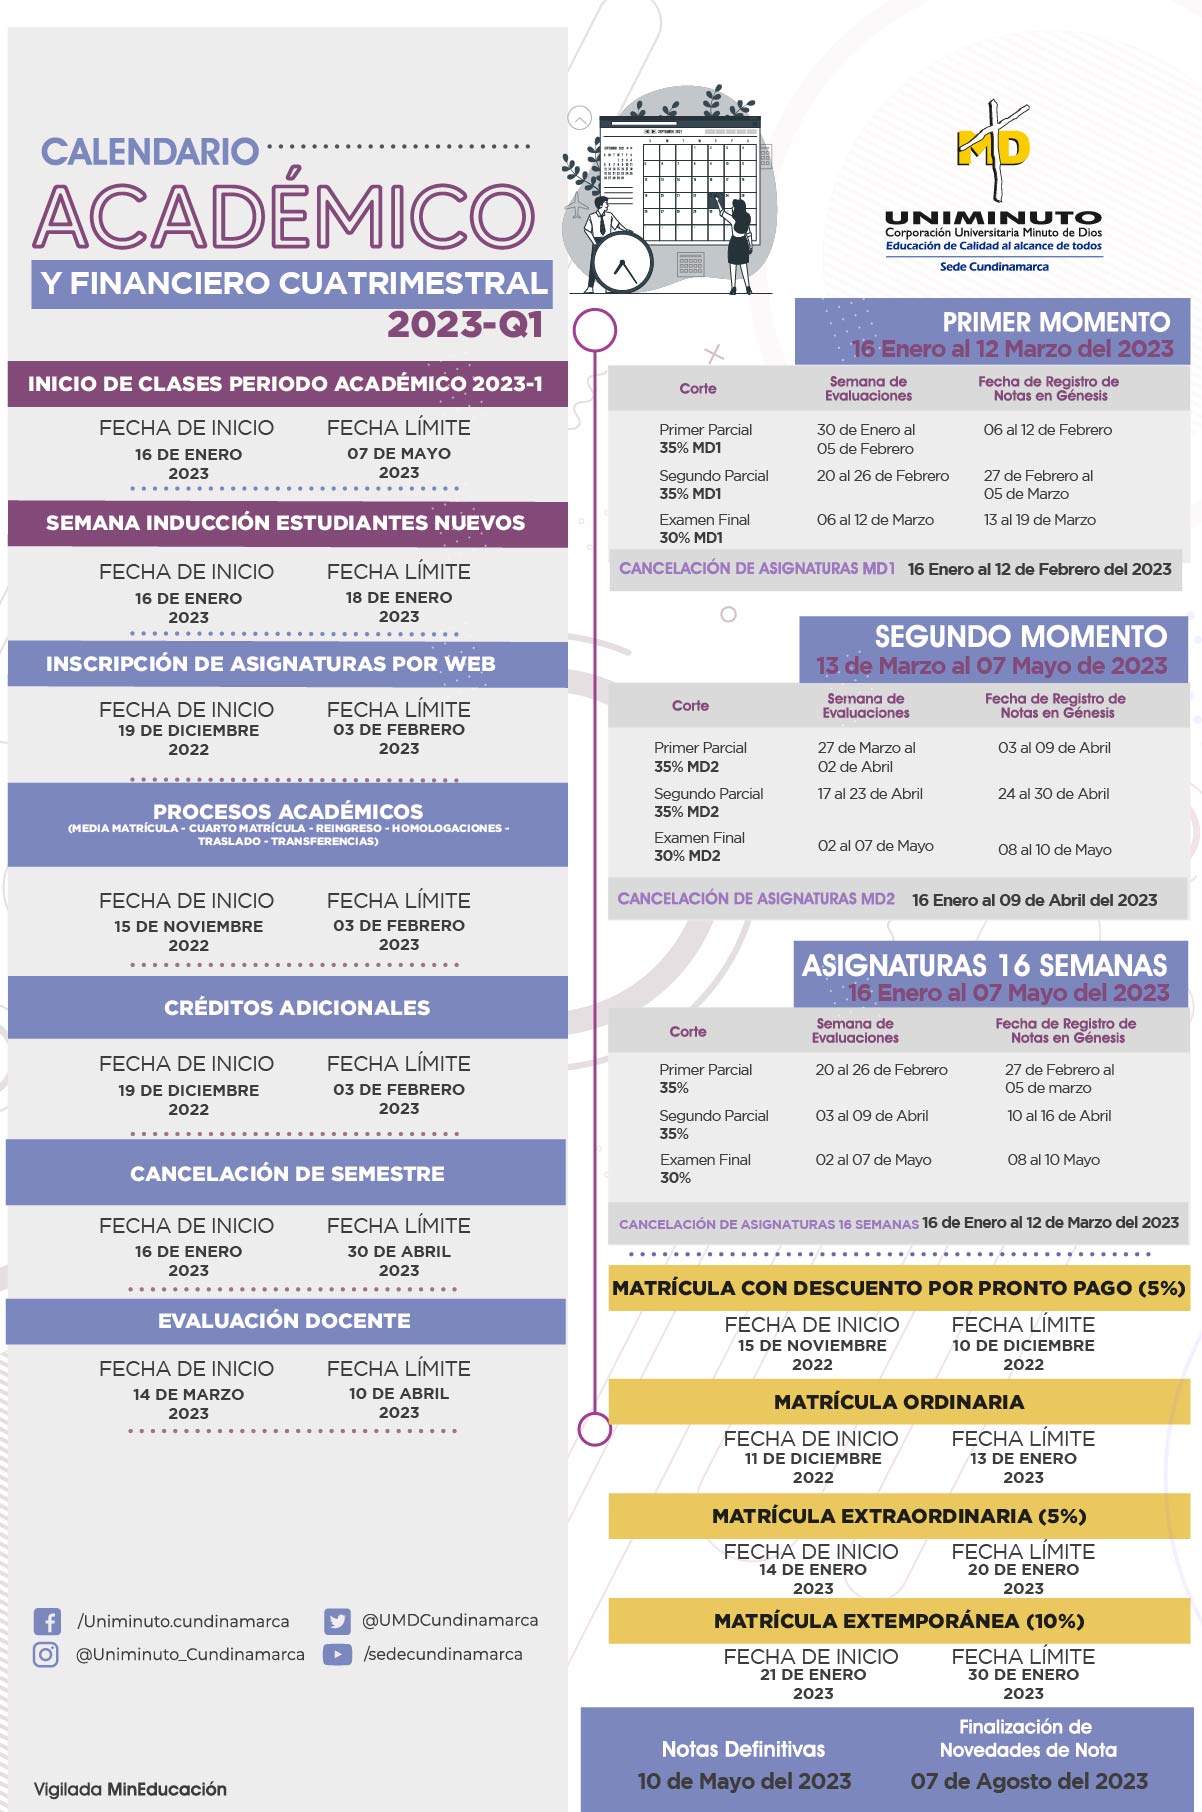 Calendarios Académicos y Financieros Rectoría Cundinamarca